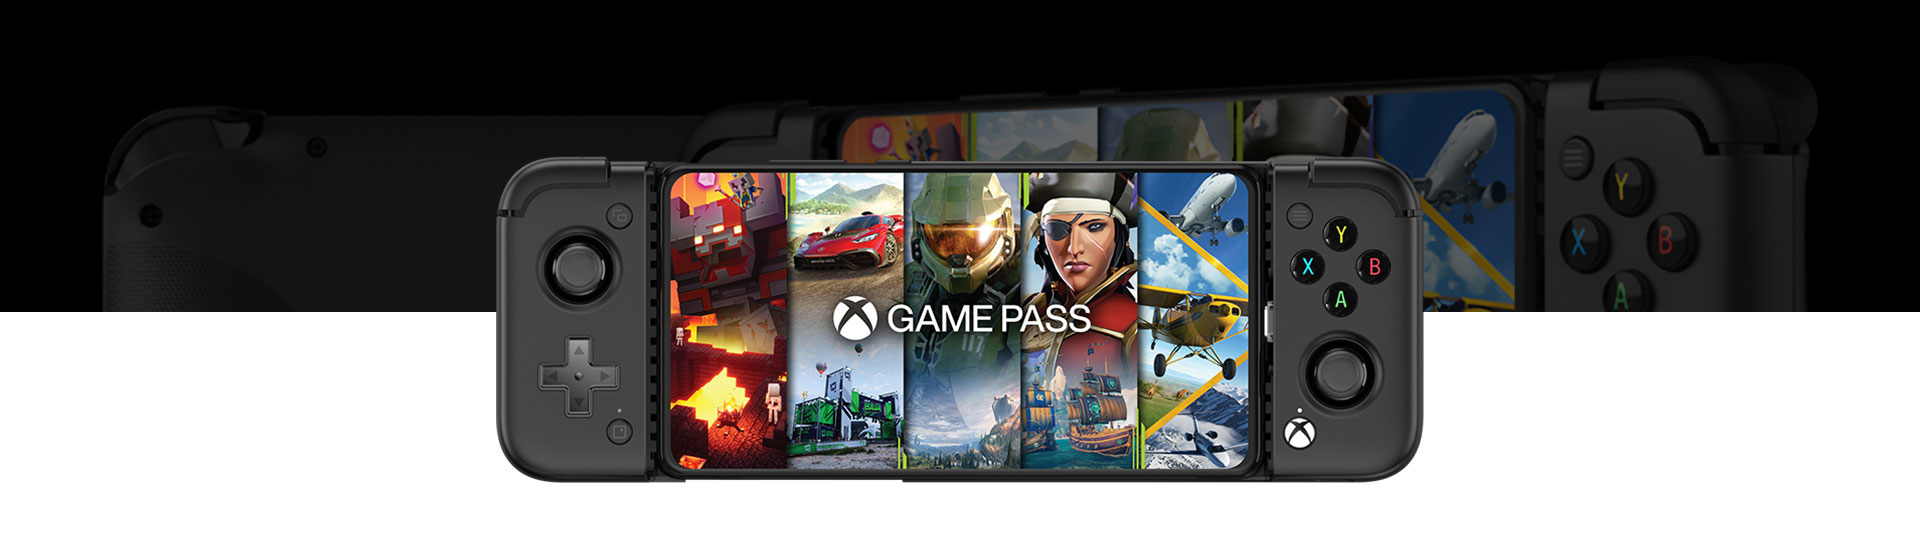 Vista anteriore del Controller di gioco GameSir X2 Pro per dispositivi mobili Android e visualizzazione di una schermata di Game Pass